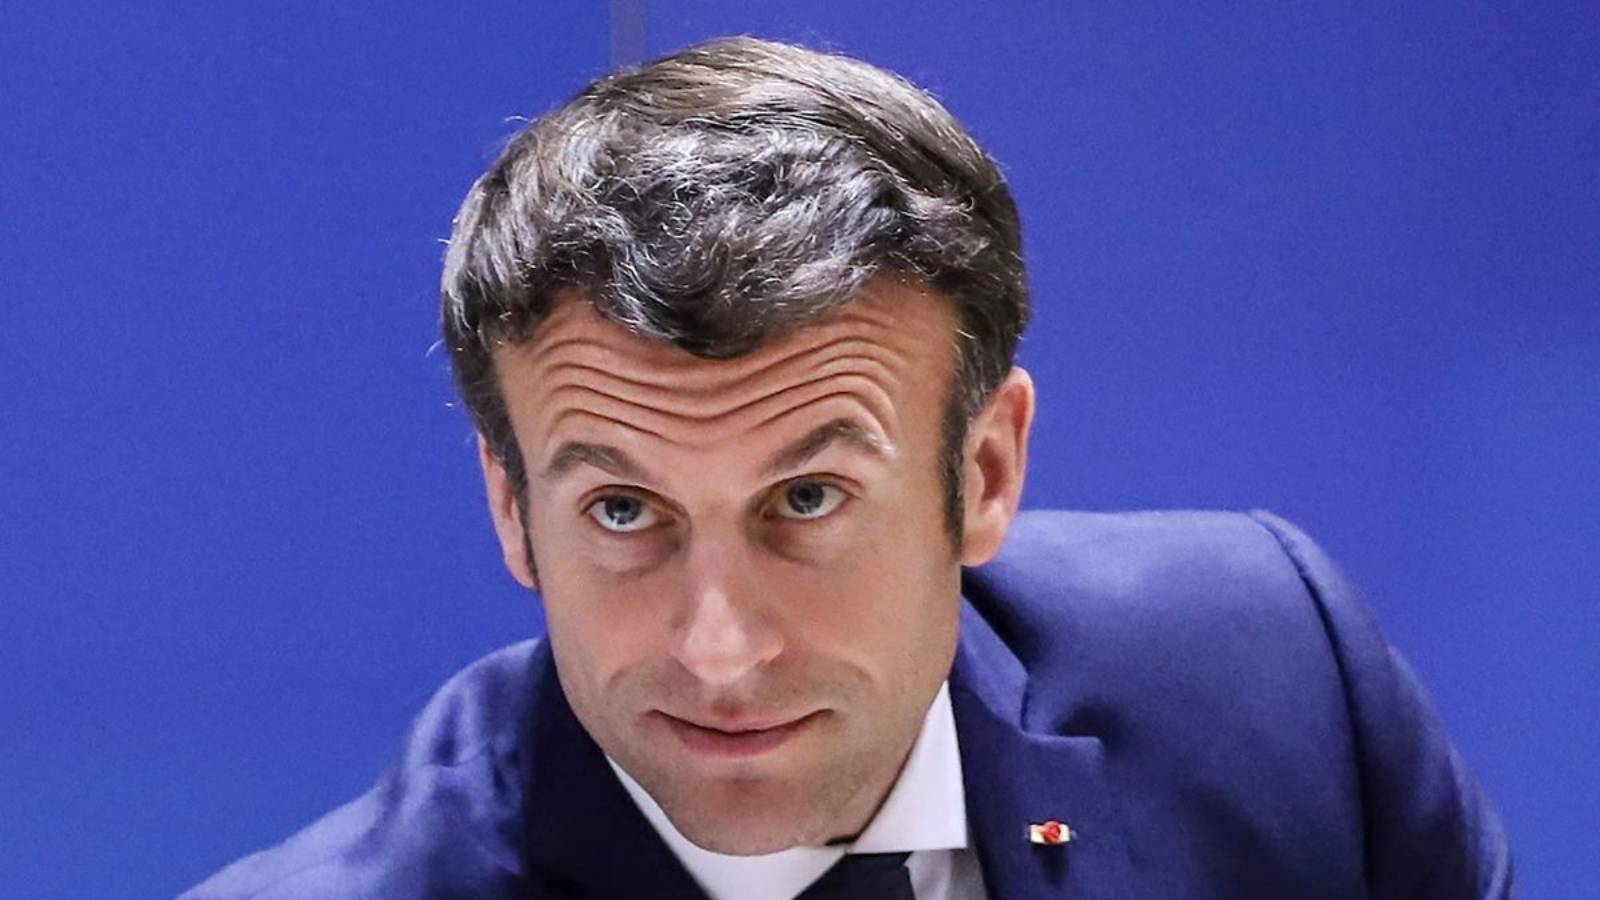 Emmanuel Macron Annuncio molto IMPORTANTE per la Russia nella guerra con l'Ucraina